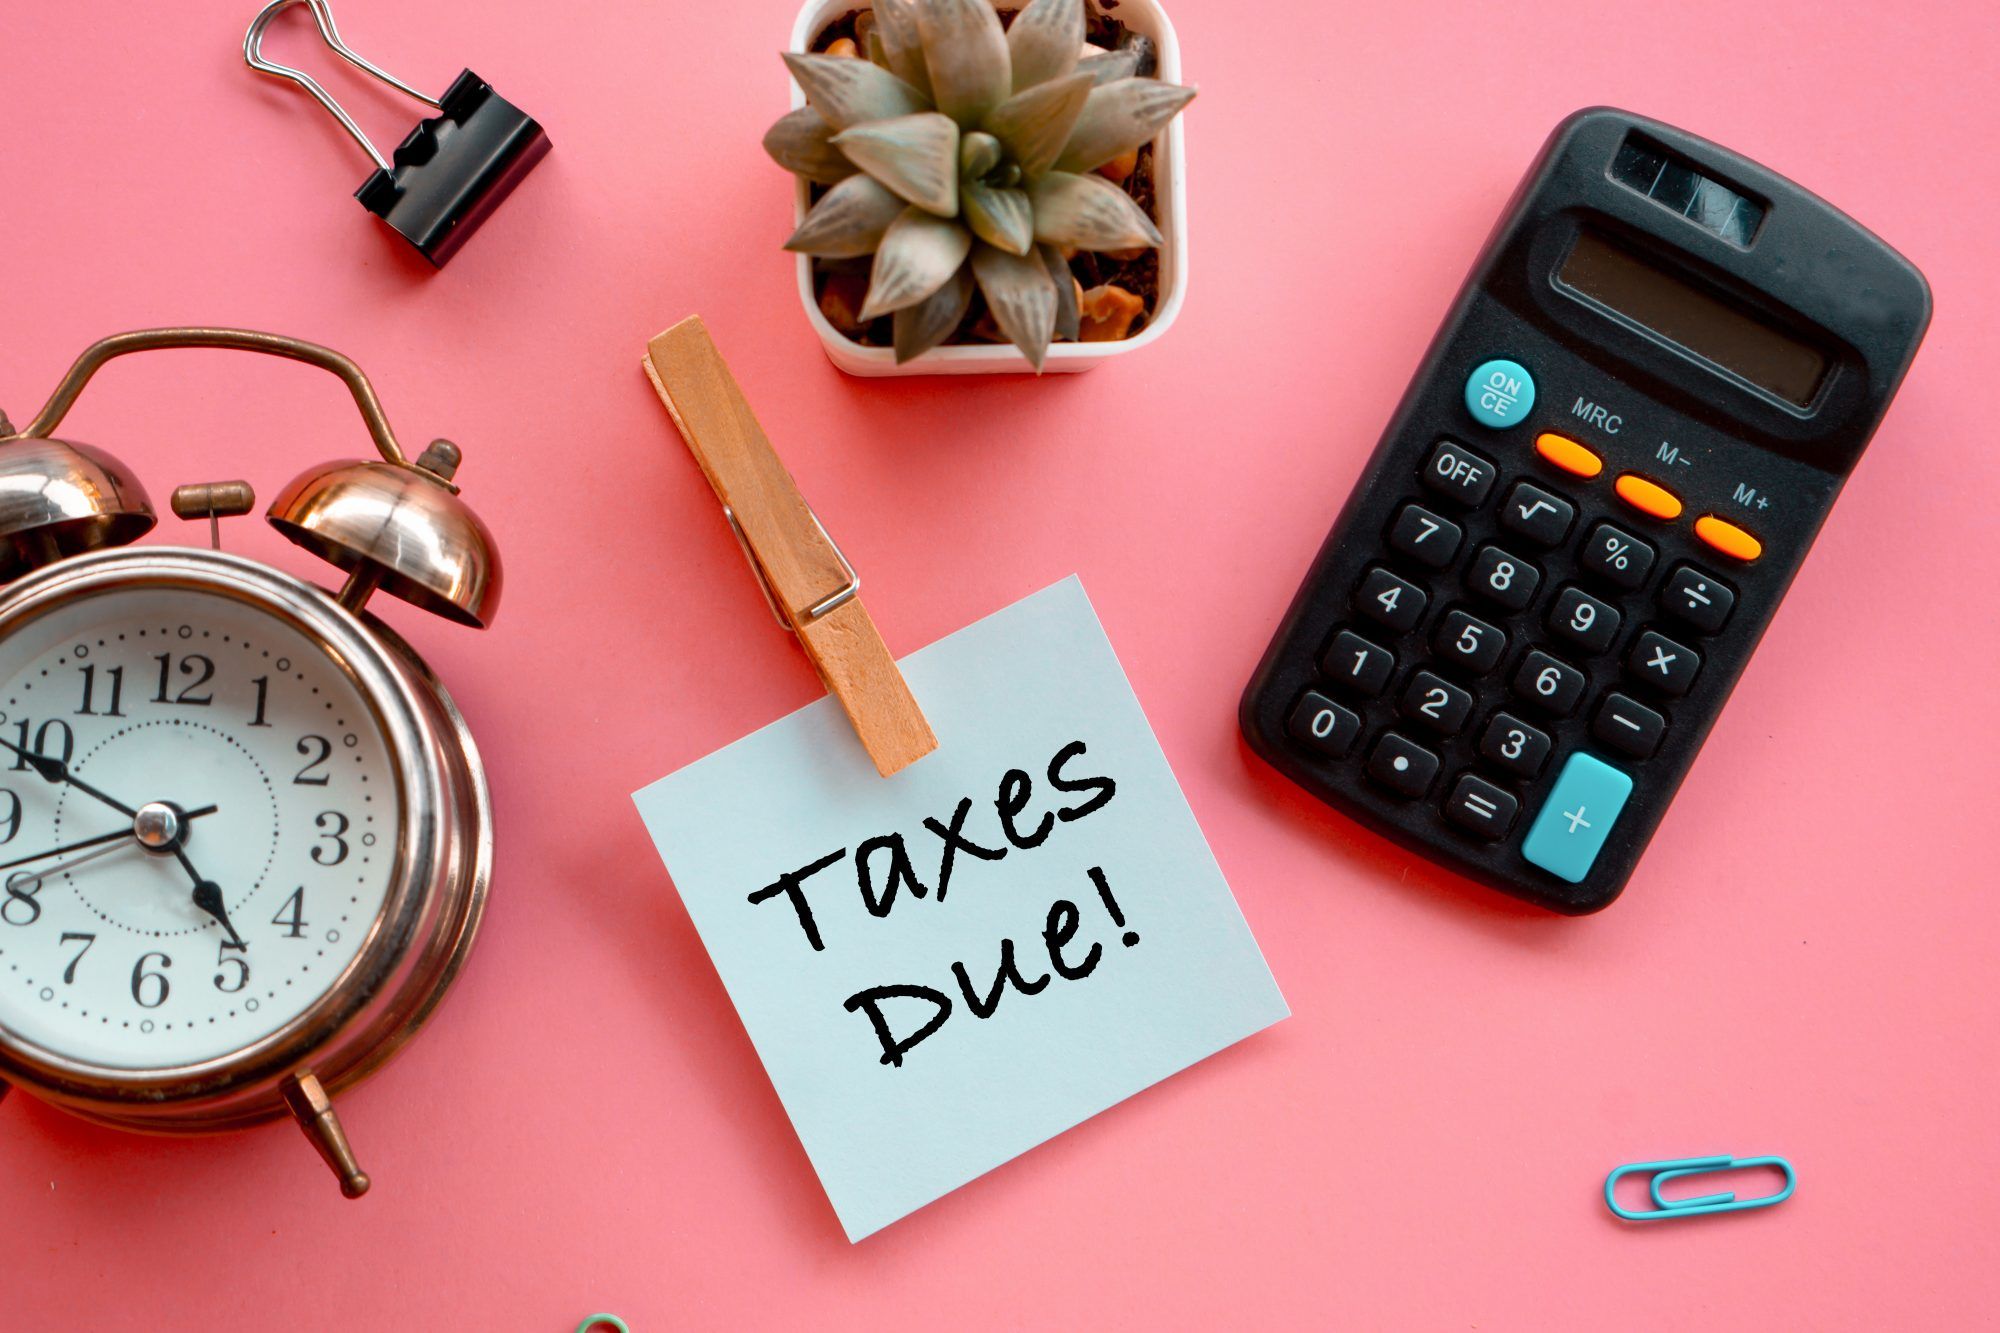 IRS-Steuerfrist 2021 ändert sich